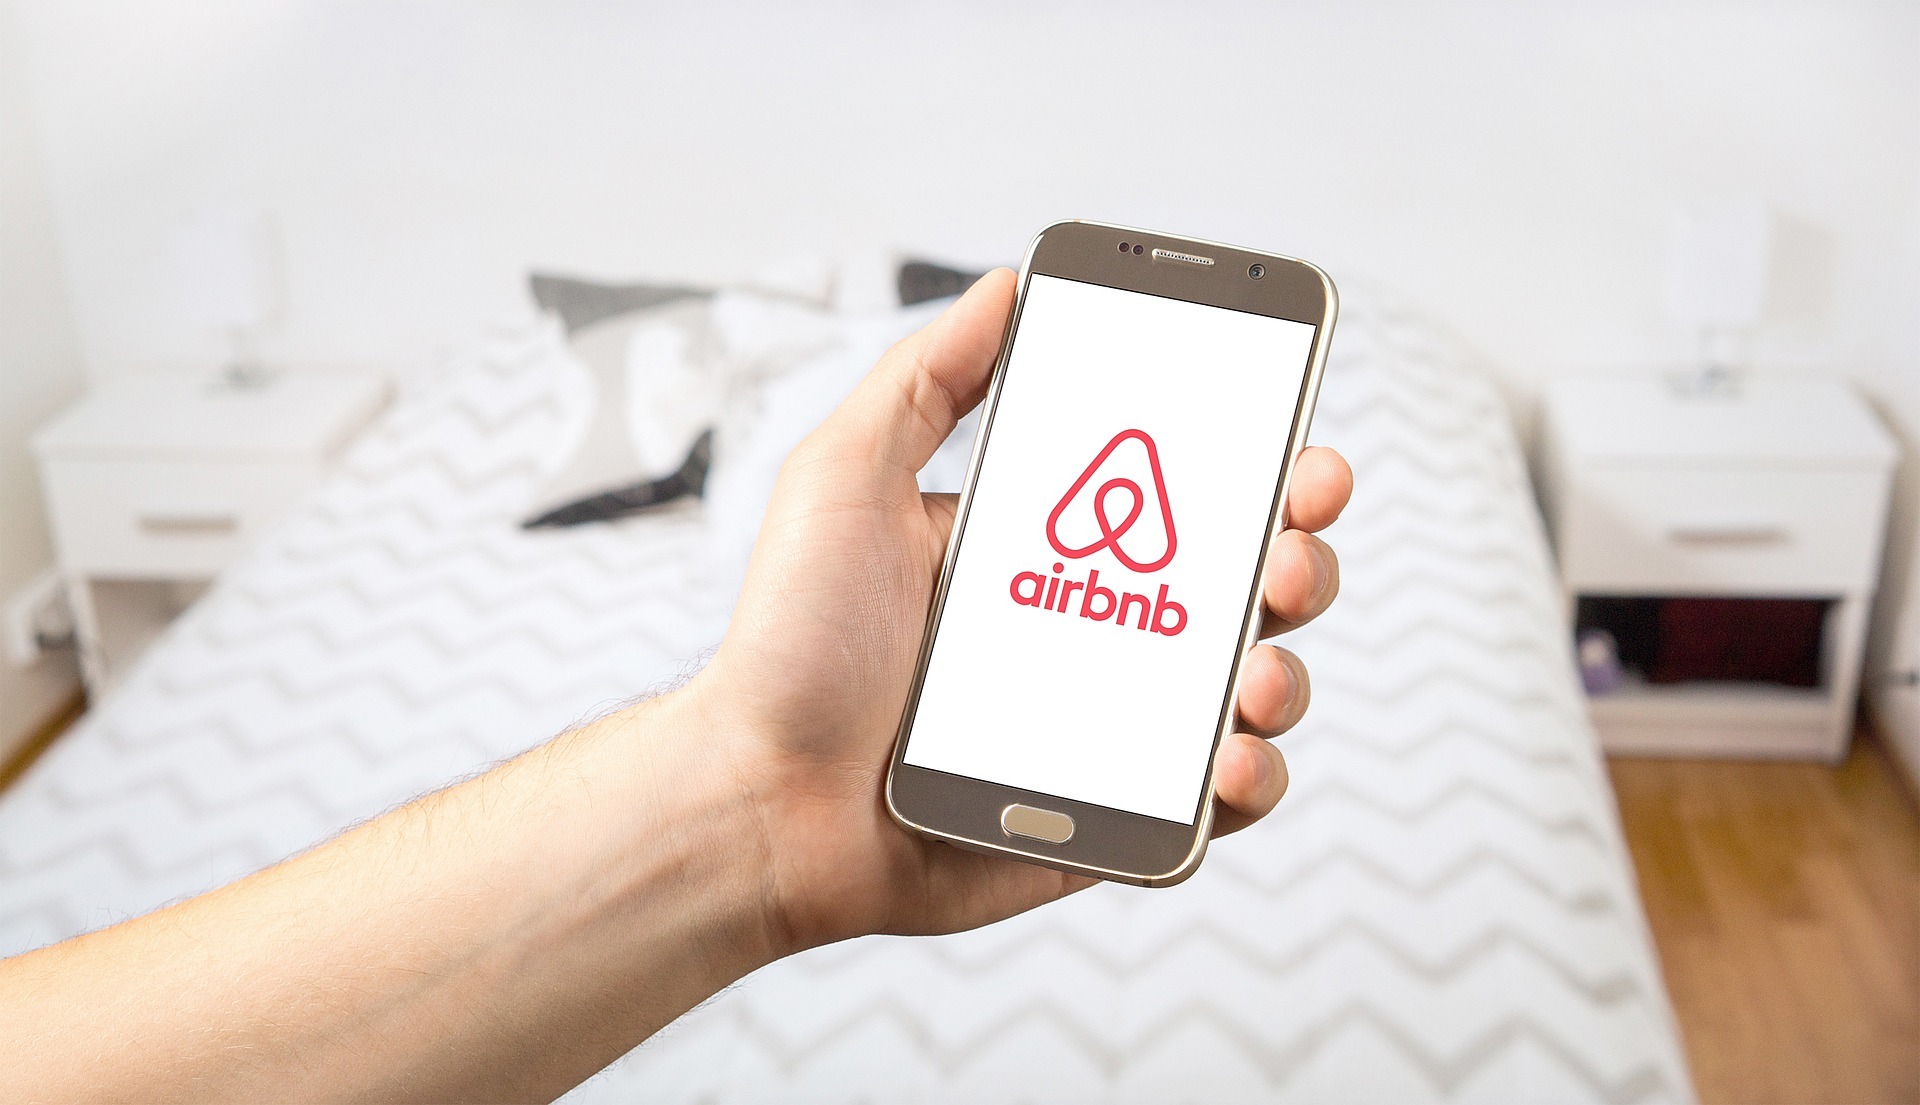  Airbnb, un voyage accessible 